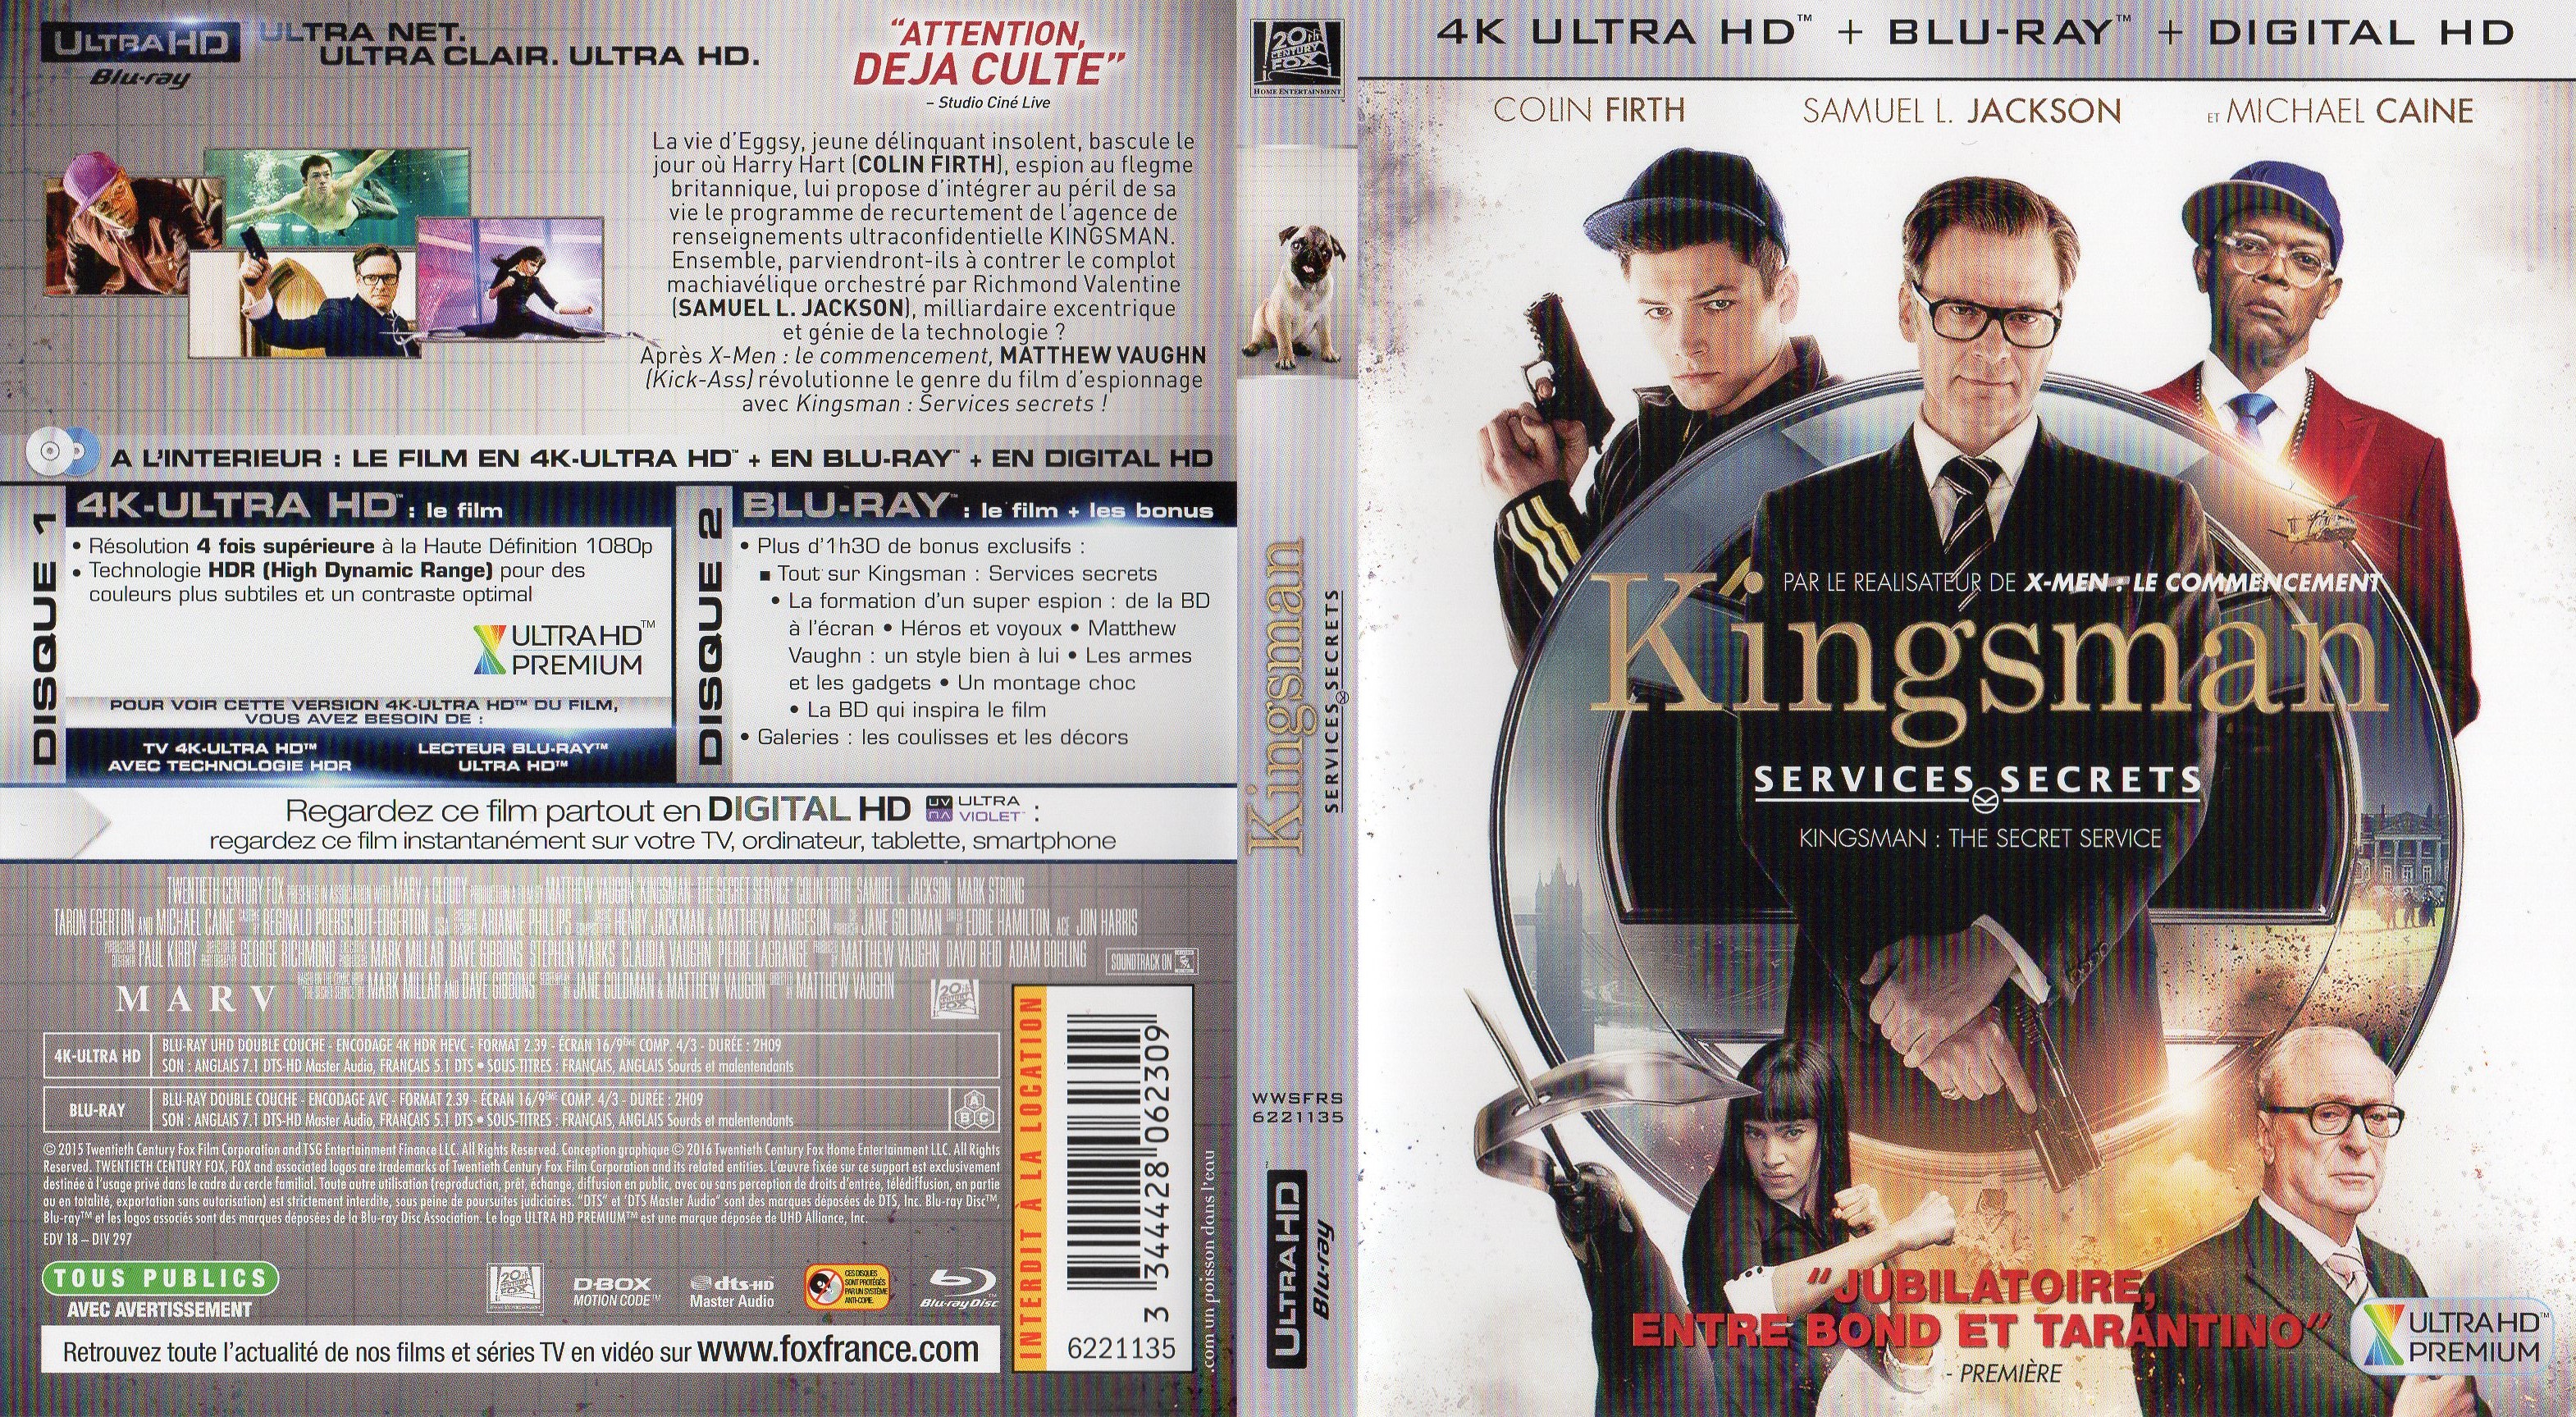 Jaquette DVD Kingsman : Services secrets 4K (BLU-RAY)